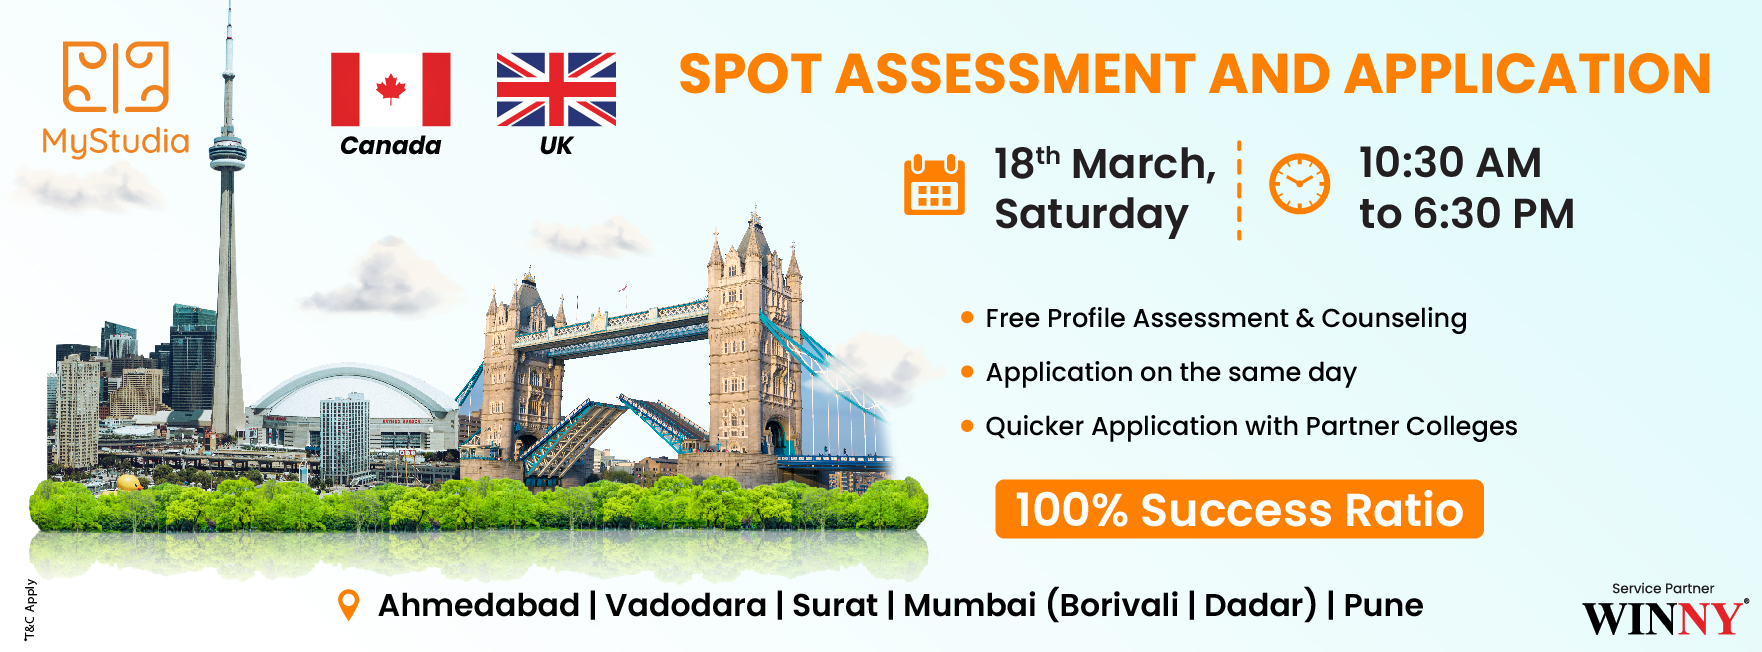 Study Abroad Seminar for Canada and UK at Ahmedabad, Ahmedabad, Gujarat, India